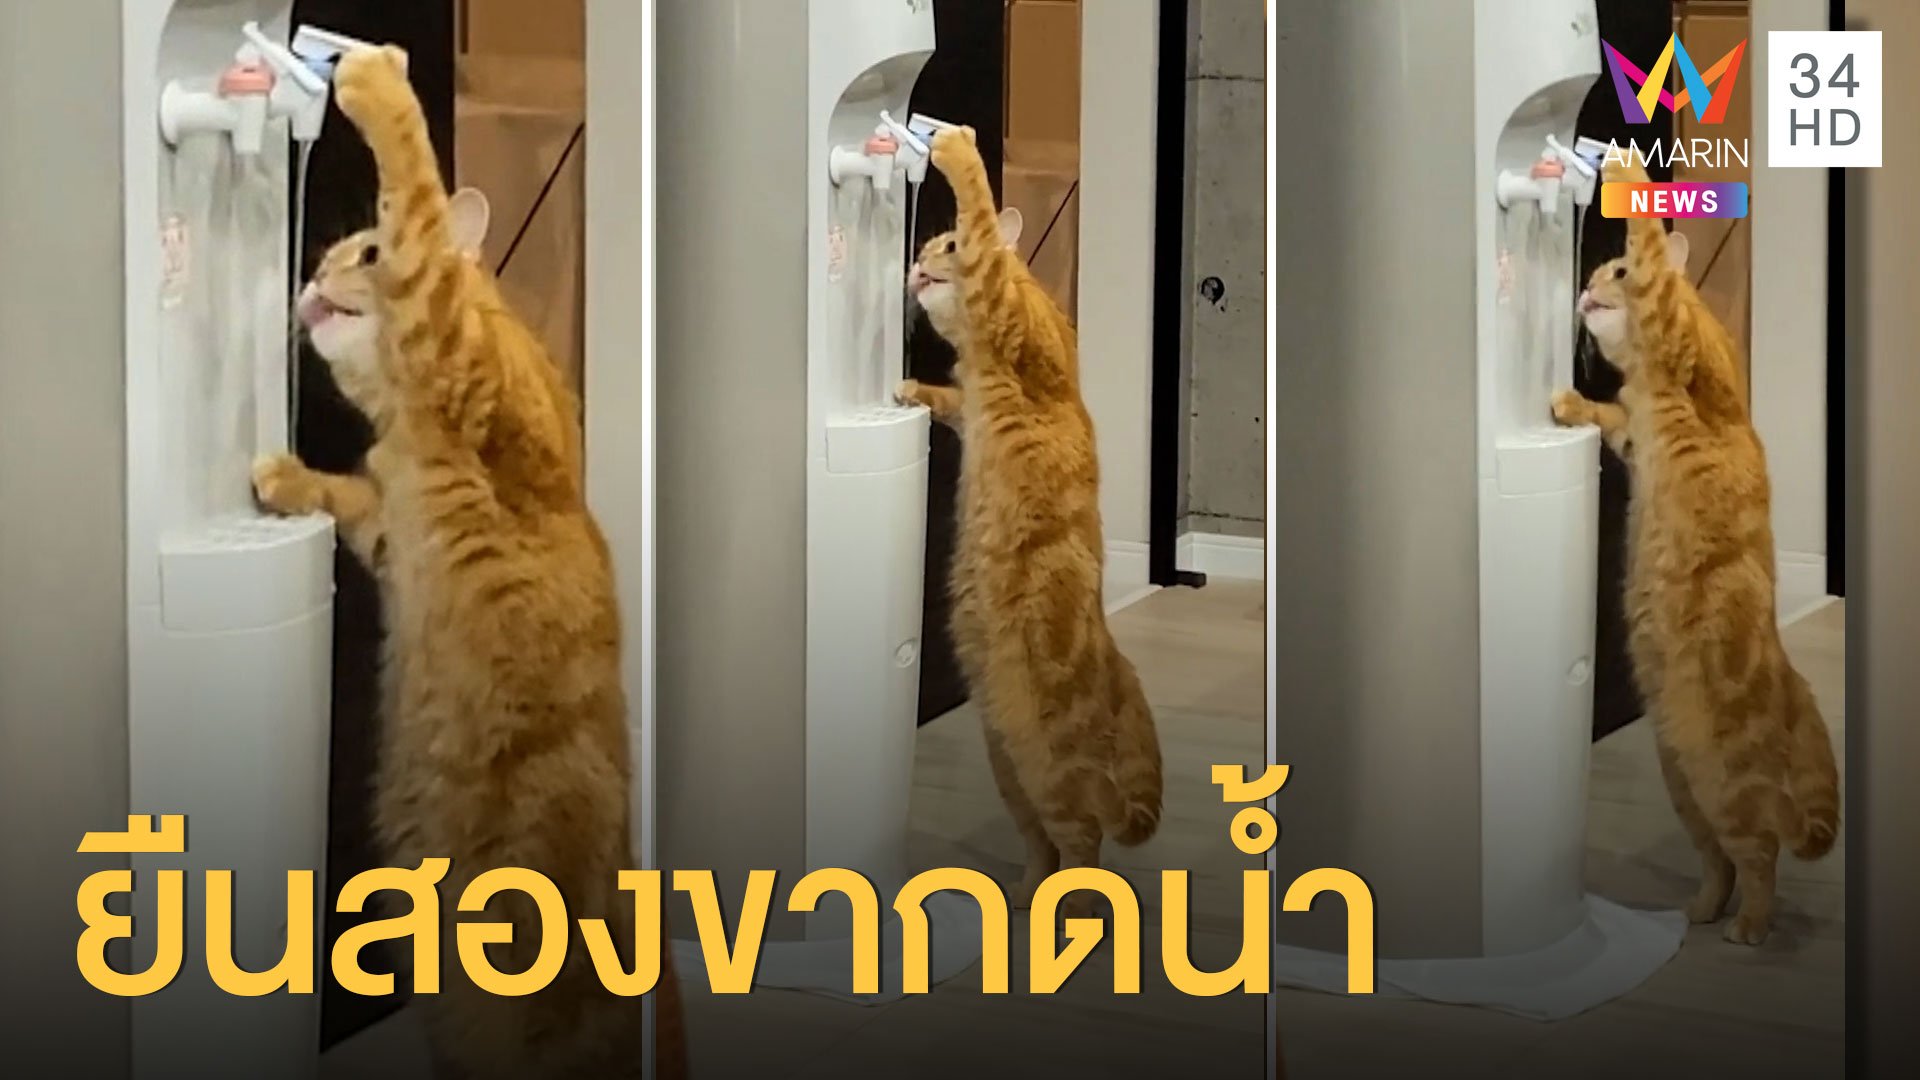  น้องแมวยืนสองขา กดตู้น้ำเย็นกินเองได้ | ข่าวอรุณอมรินทร์ | 20 ต.ค. 63 | AMARIN TVHD34